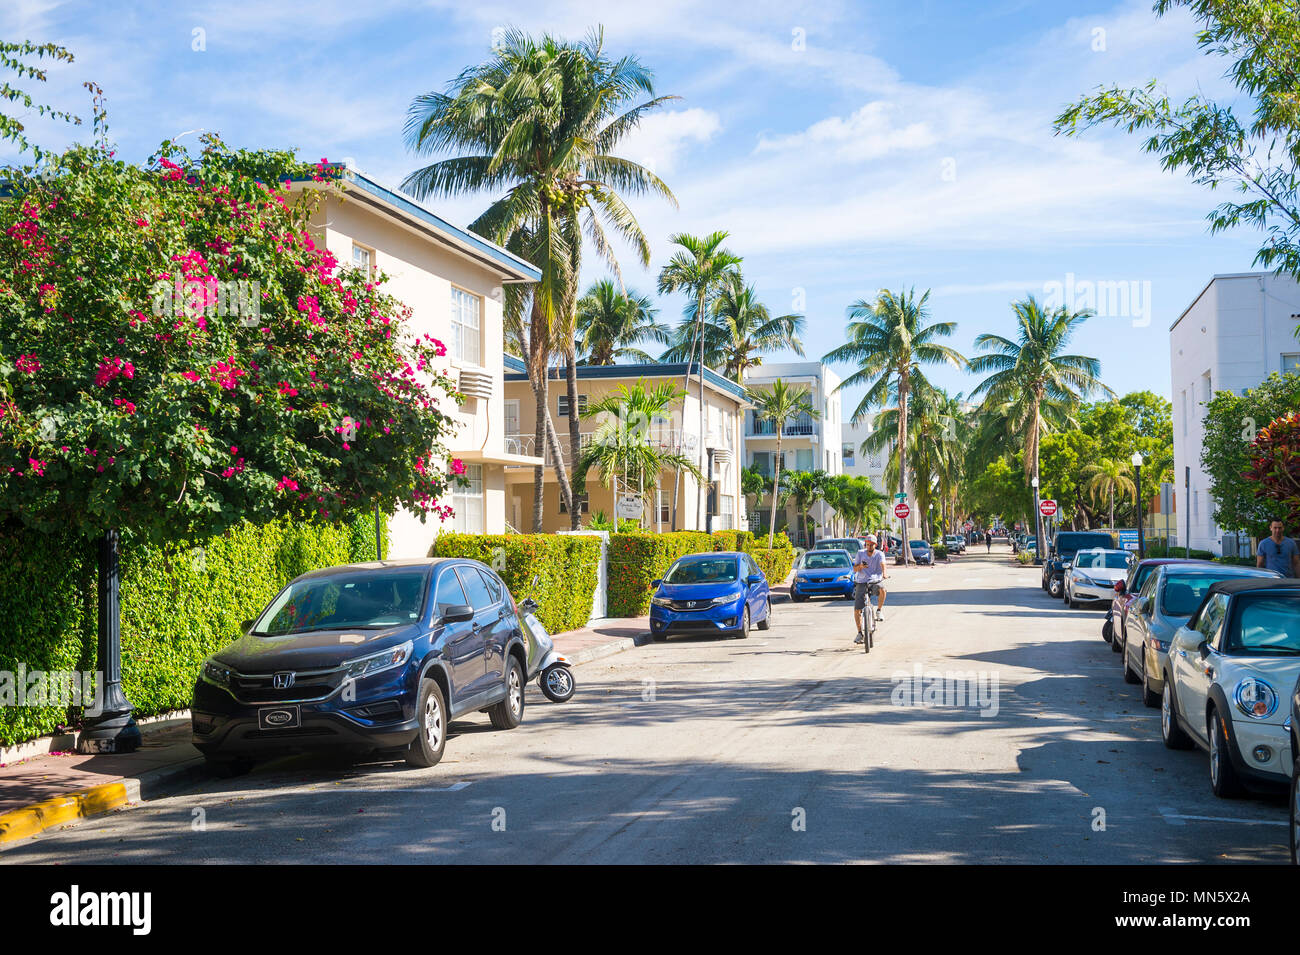 MIAMI - circa 2017, janvier : Cyclist riding sur une rue résidentielle calme bordée de palmiers et arbustes à fleurs dans le quartier historique Art Déco Banque D'Images